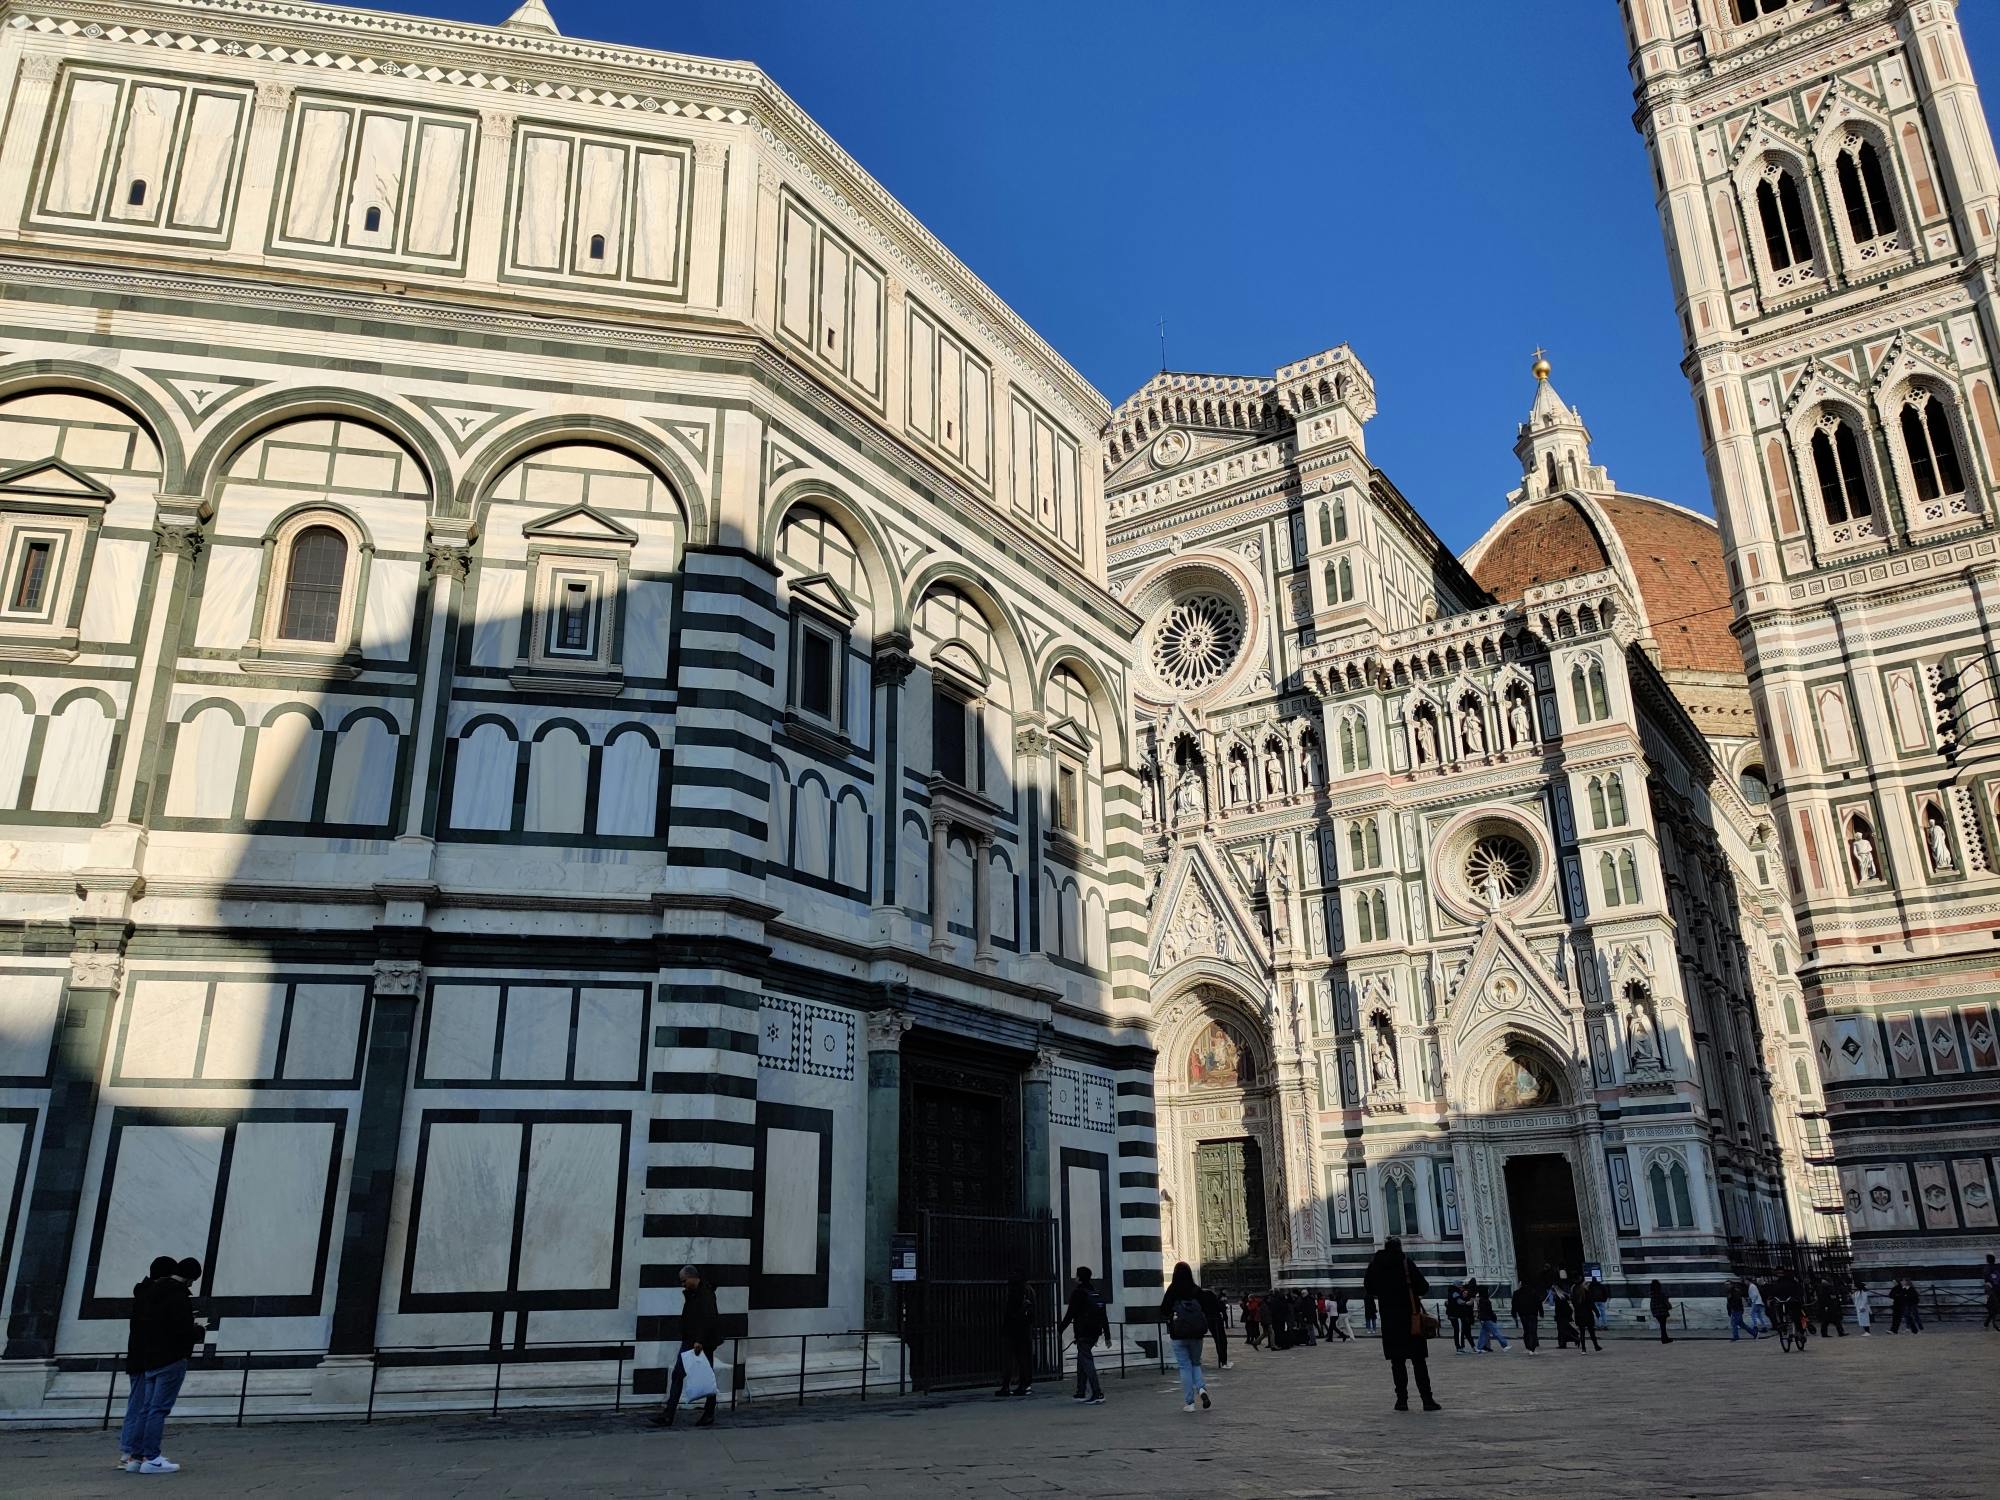 Ingresso prioritario al Duomo di Firenze e visita guidata